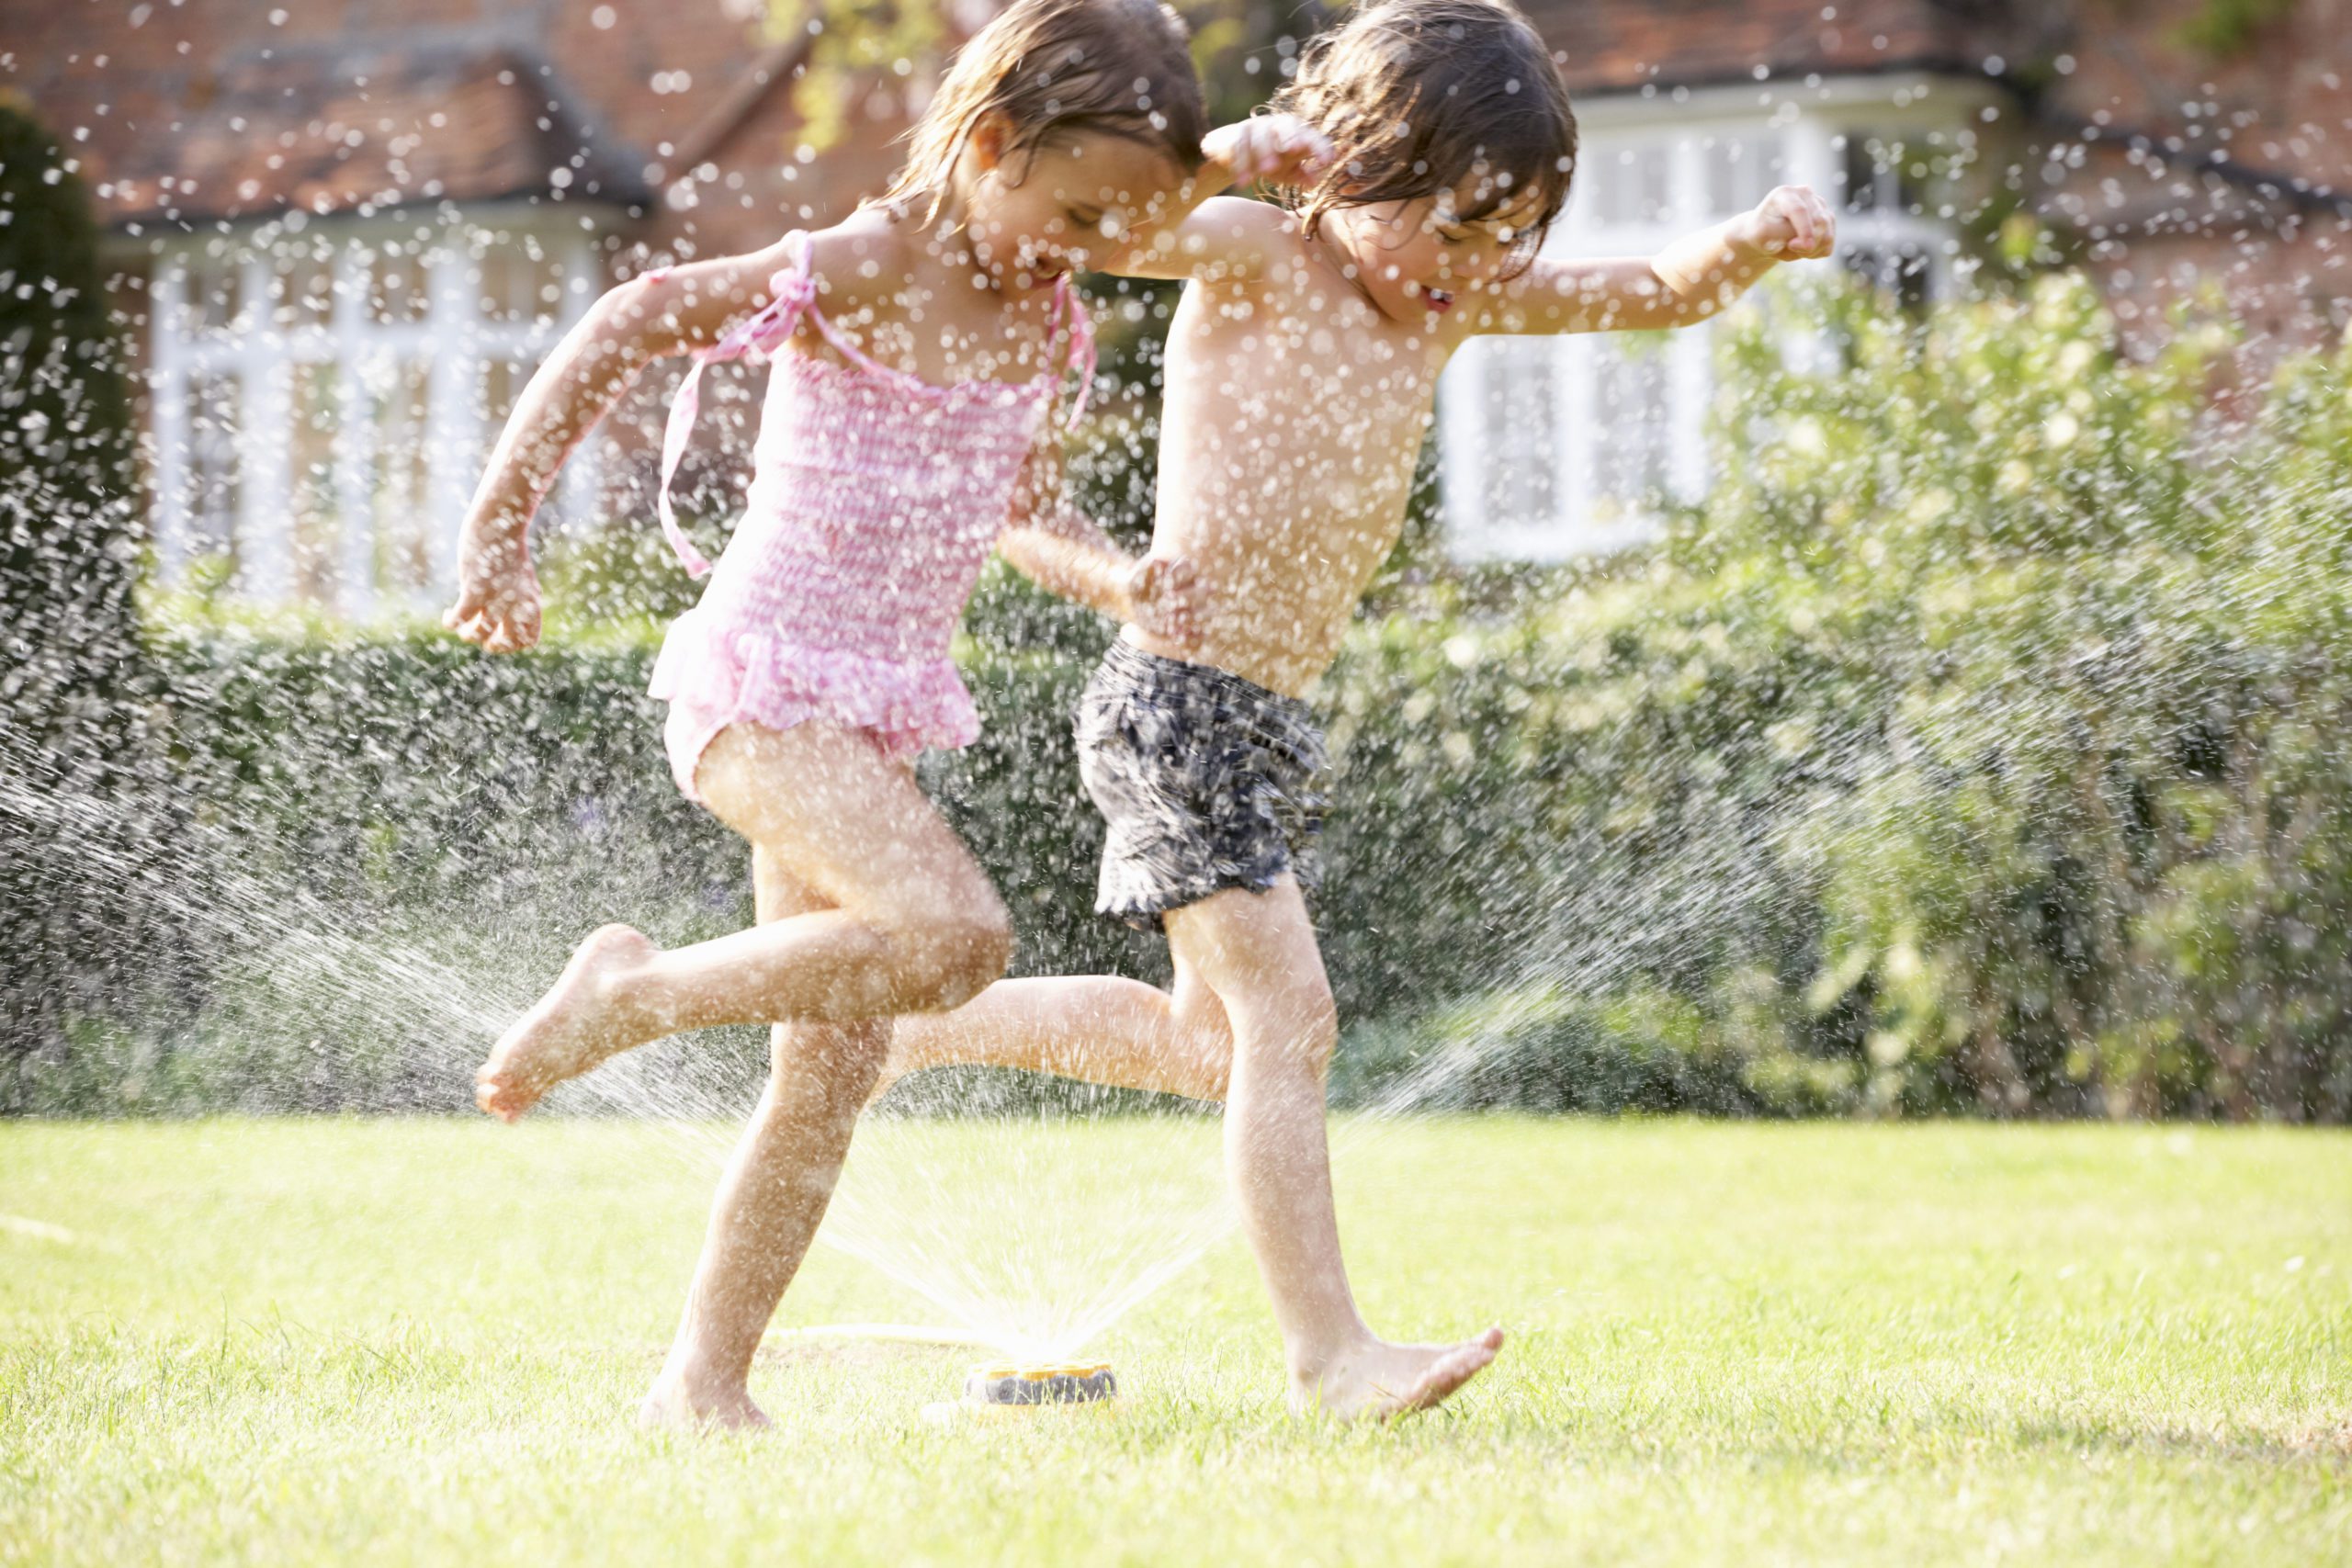 two children running through a garden sprinkler